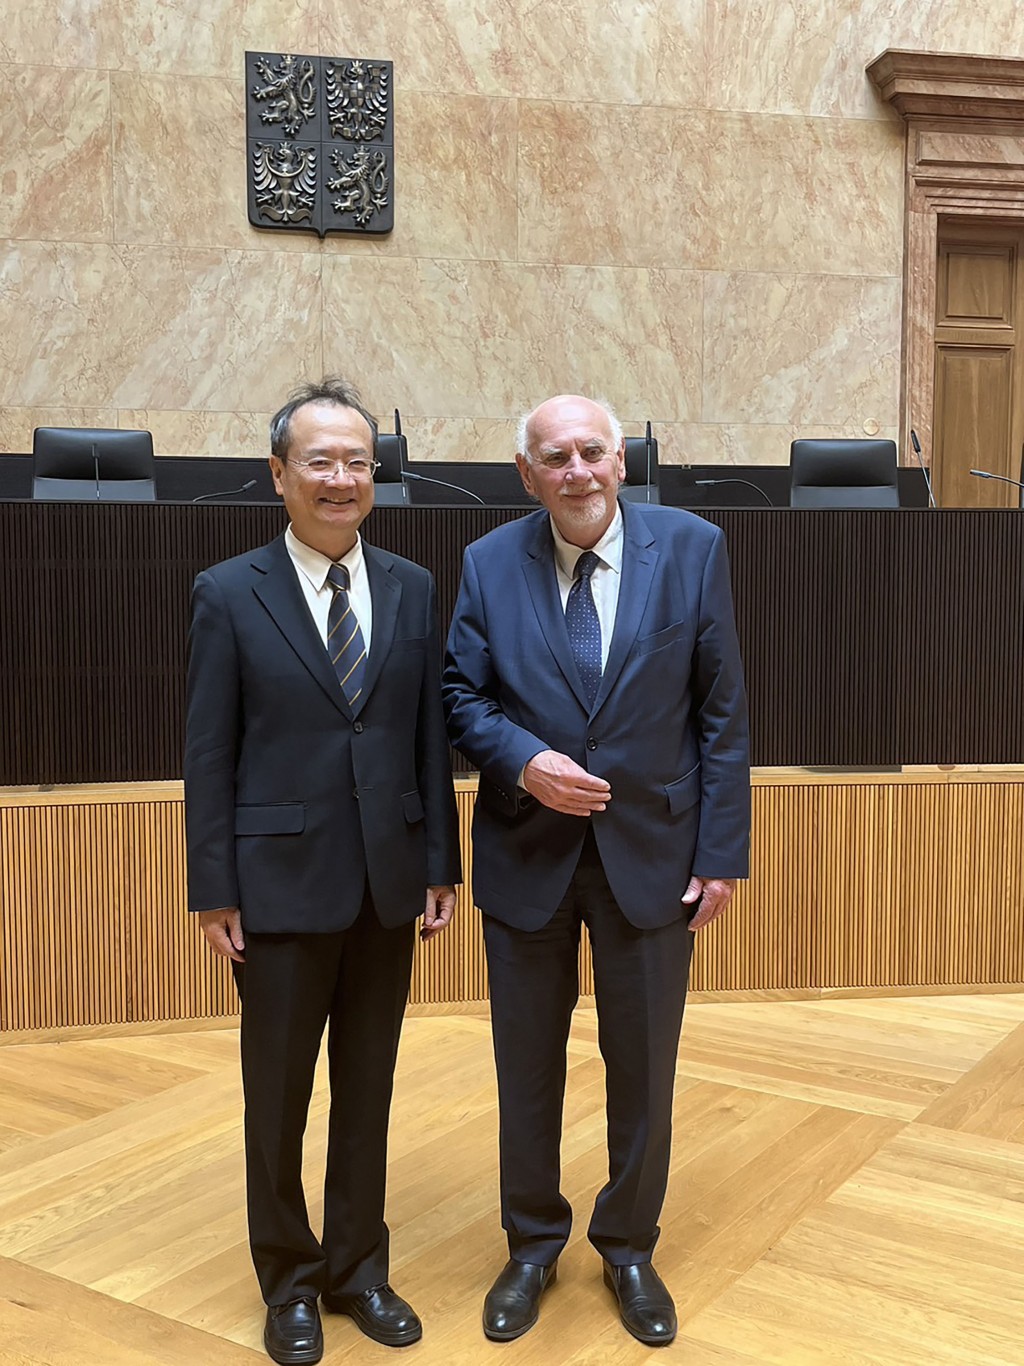 Tchajwanské vysoké soudnictví navštívilo Českou republiku |  Tchajwanské zprávy